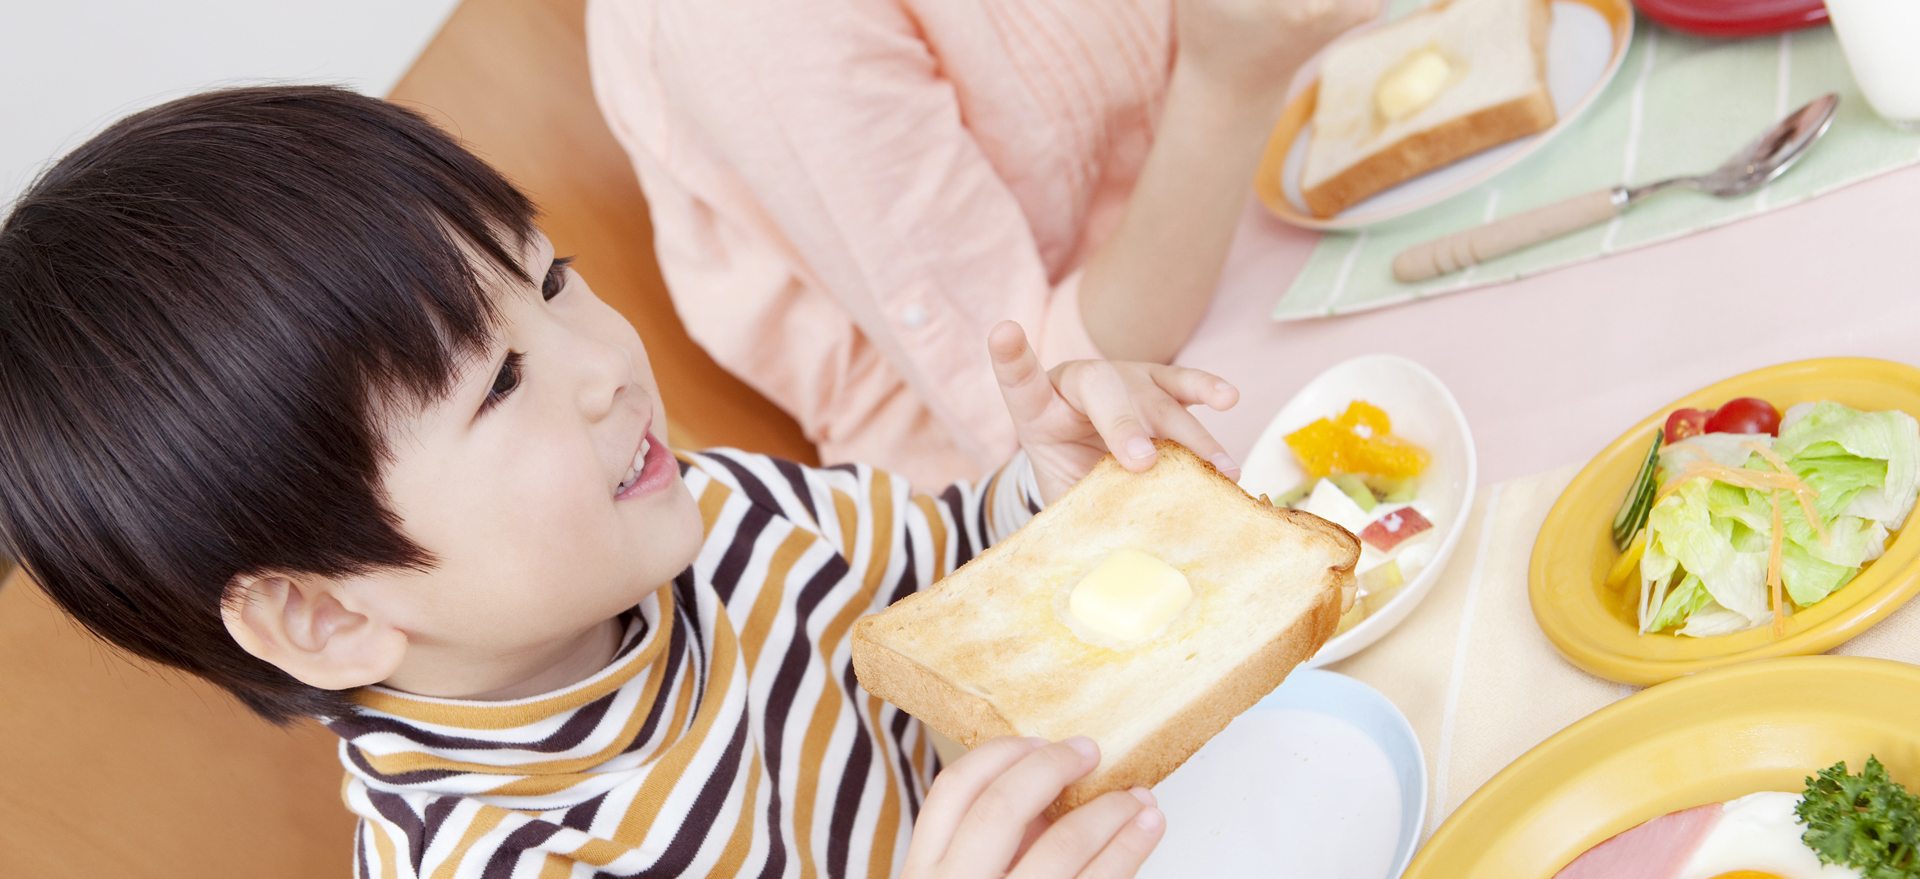 パンを食べる子供の写真